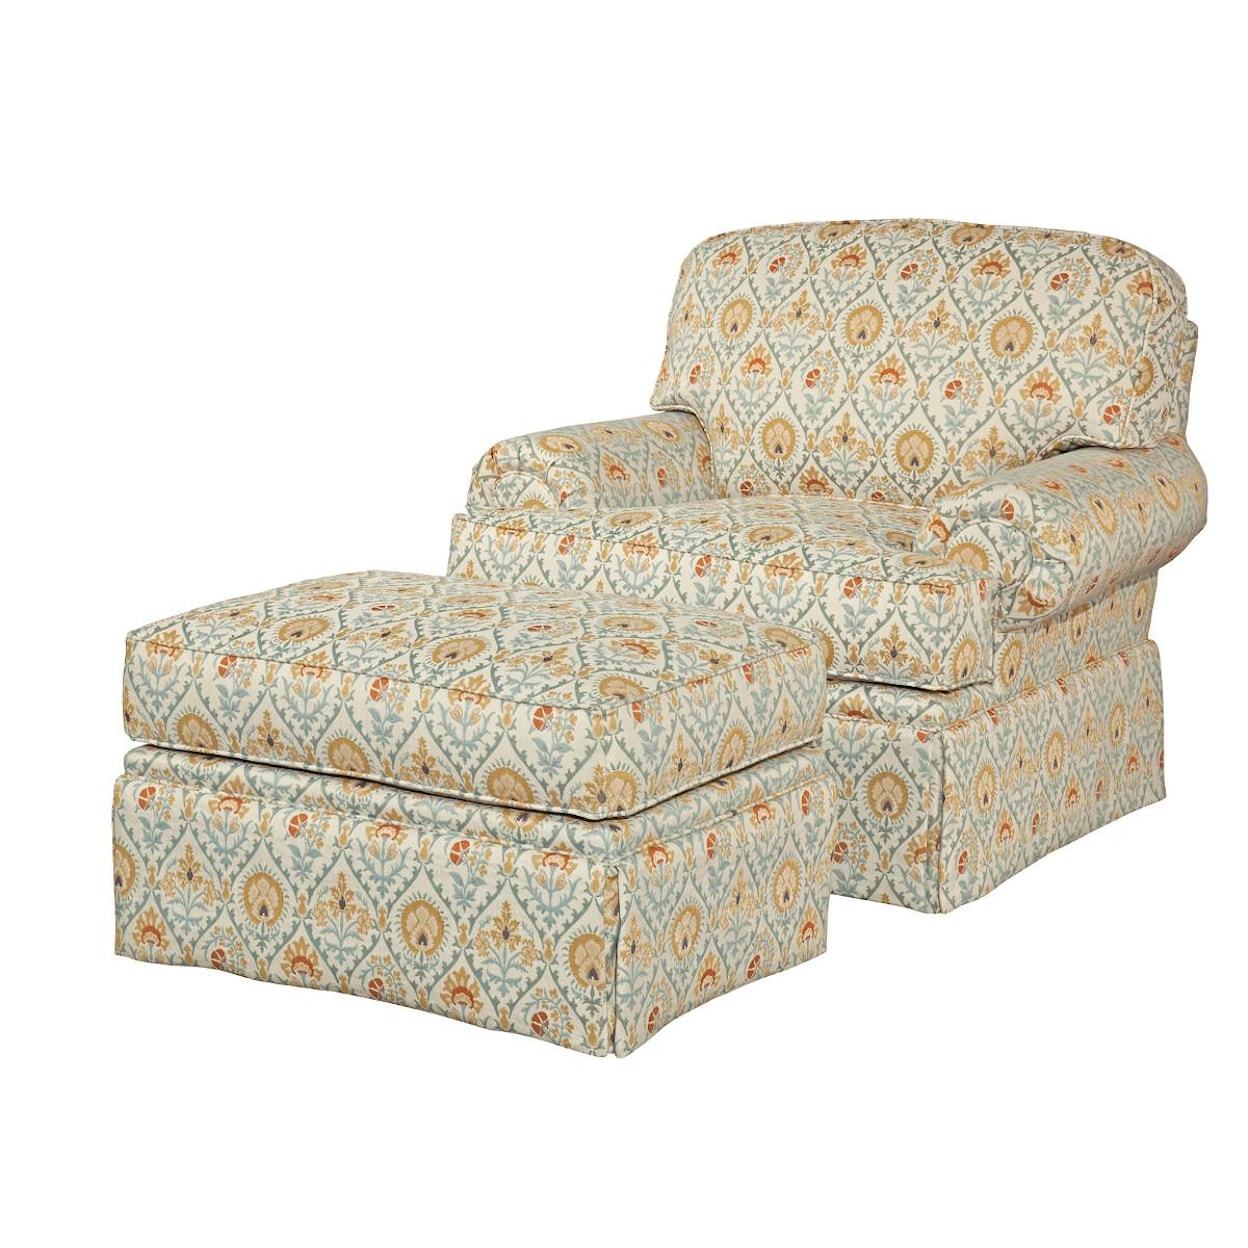 Kincaid Furniture Baltimore Chair